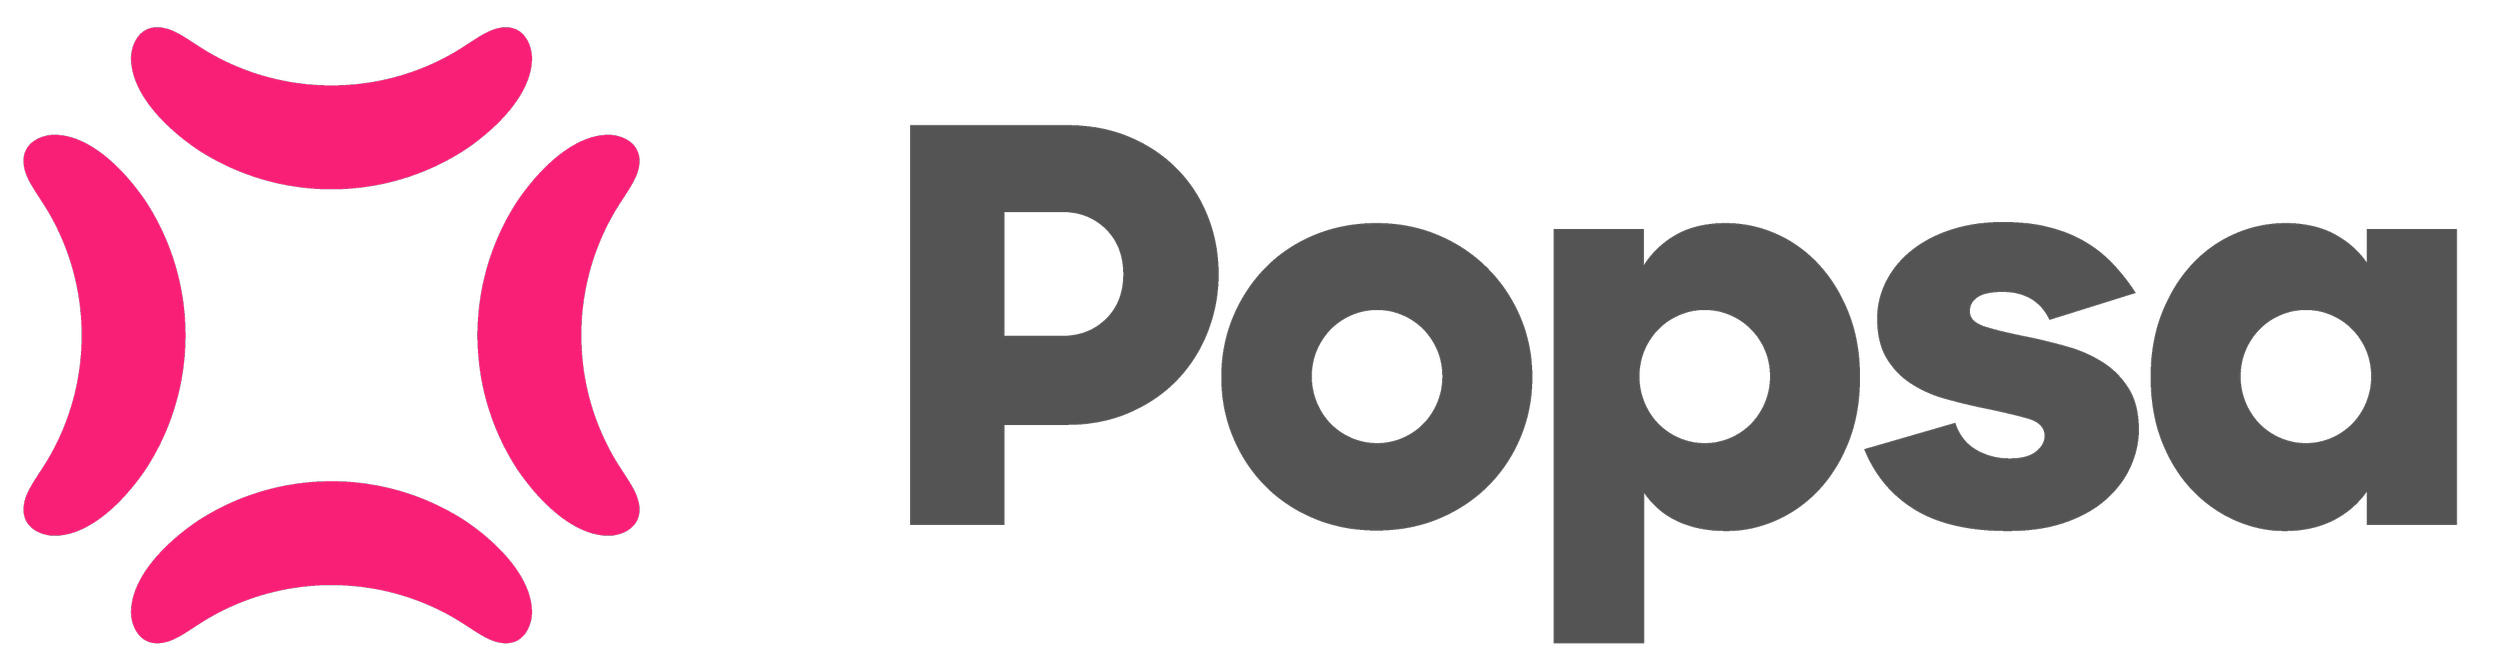 popsa_logo.png